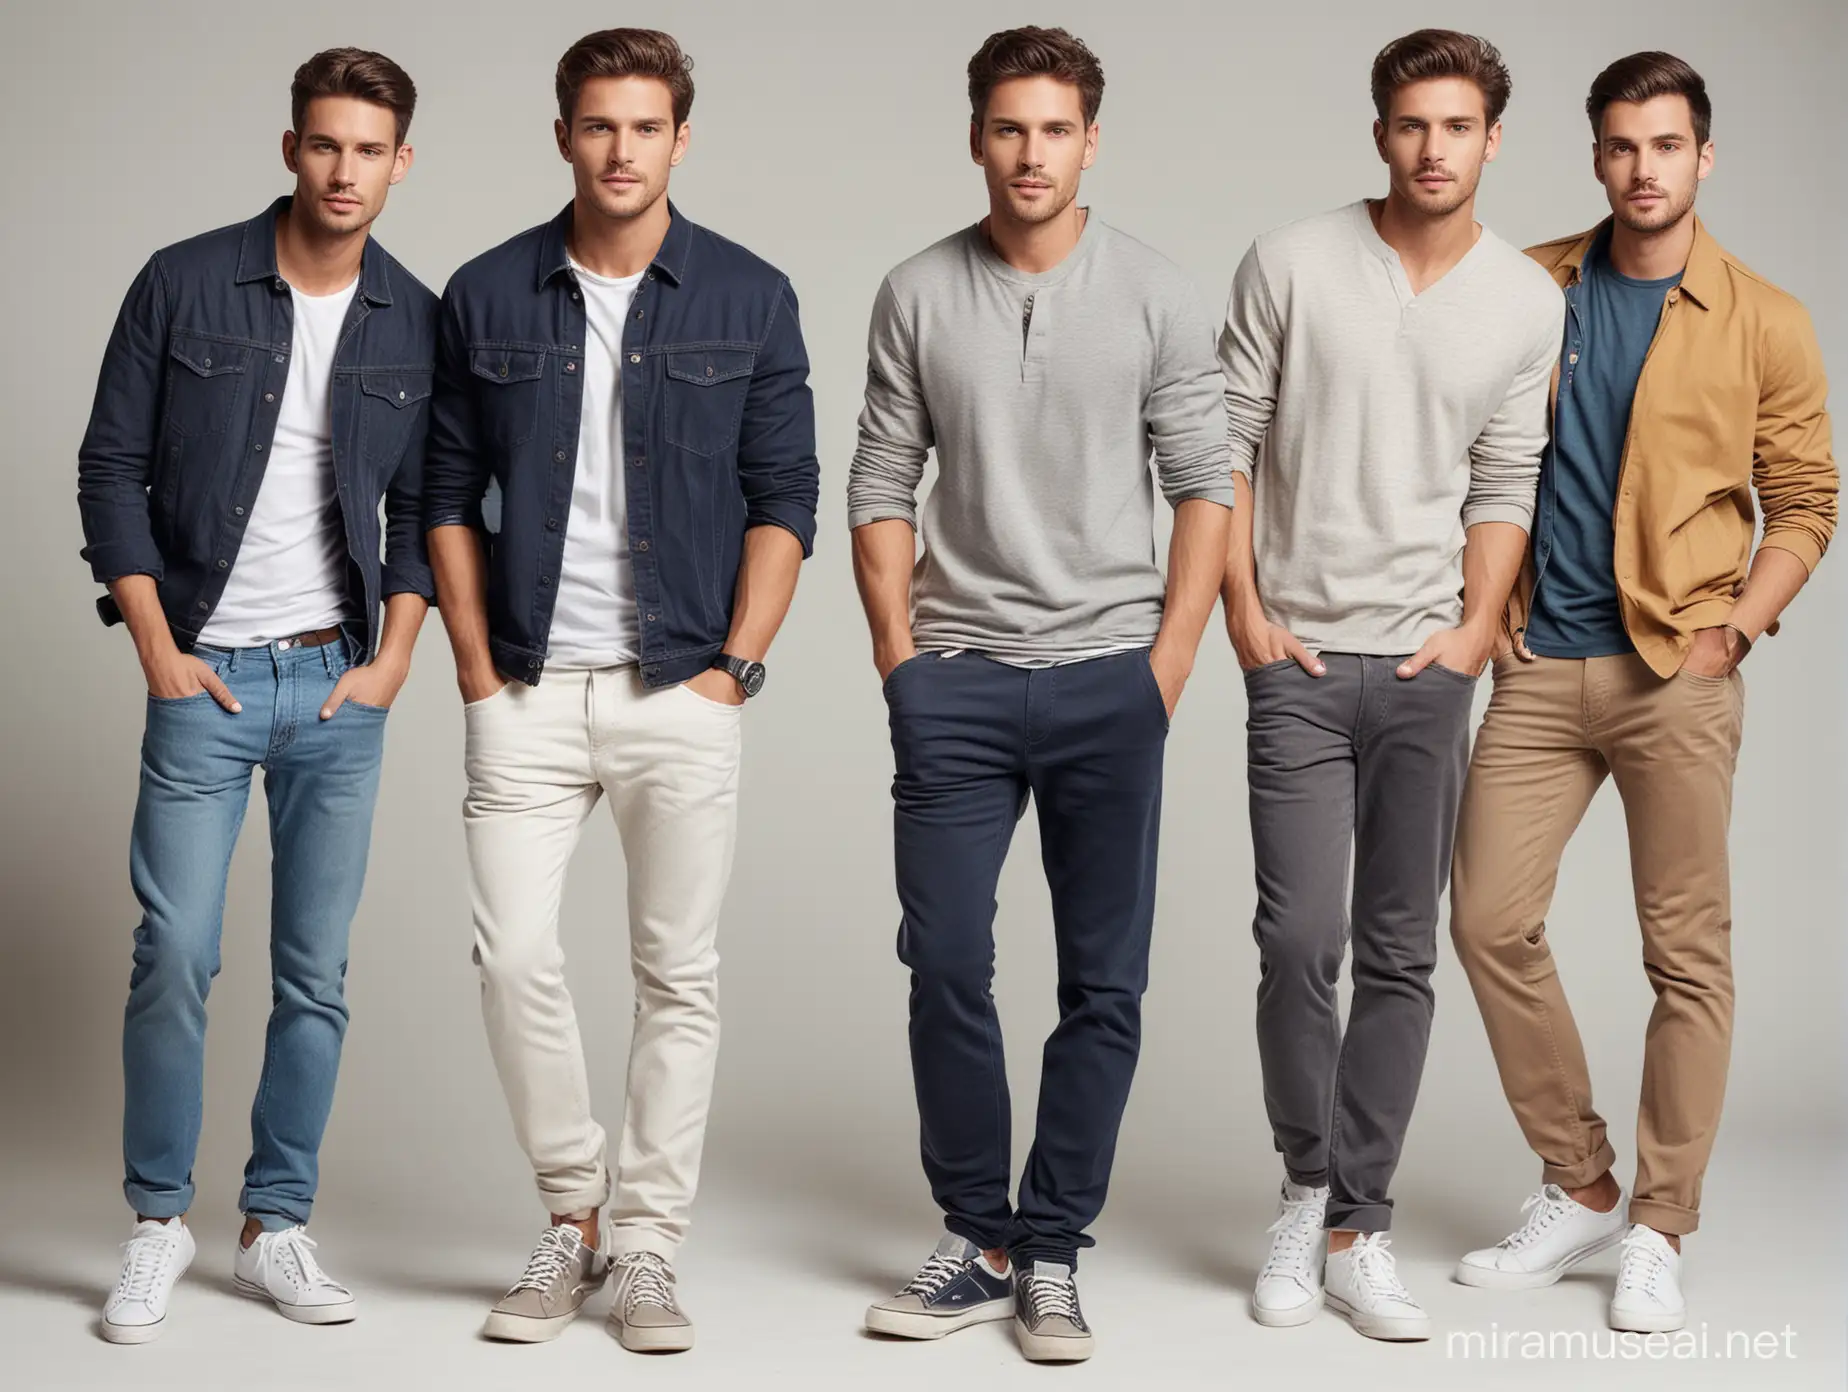 4 men models in casual wear